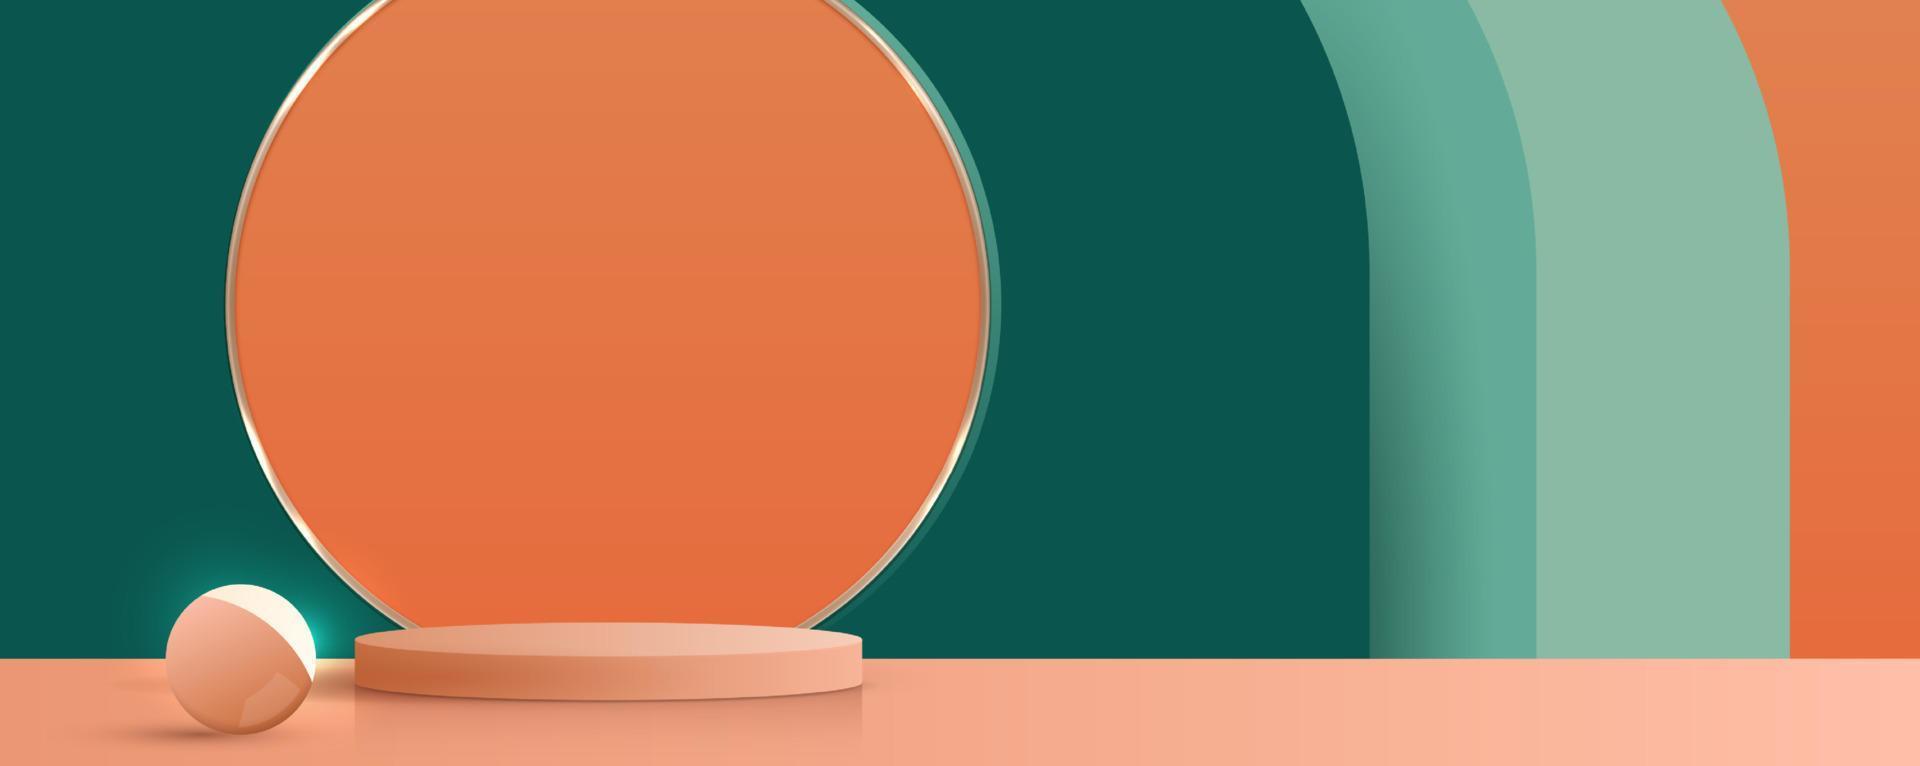 sfondo cosmetico verde e arancione e display del podio premium per il marchio e il confezionamento della presentazione del prodotto. scena vuota con luci sferiche. disegno vettoriale in studio